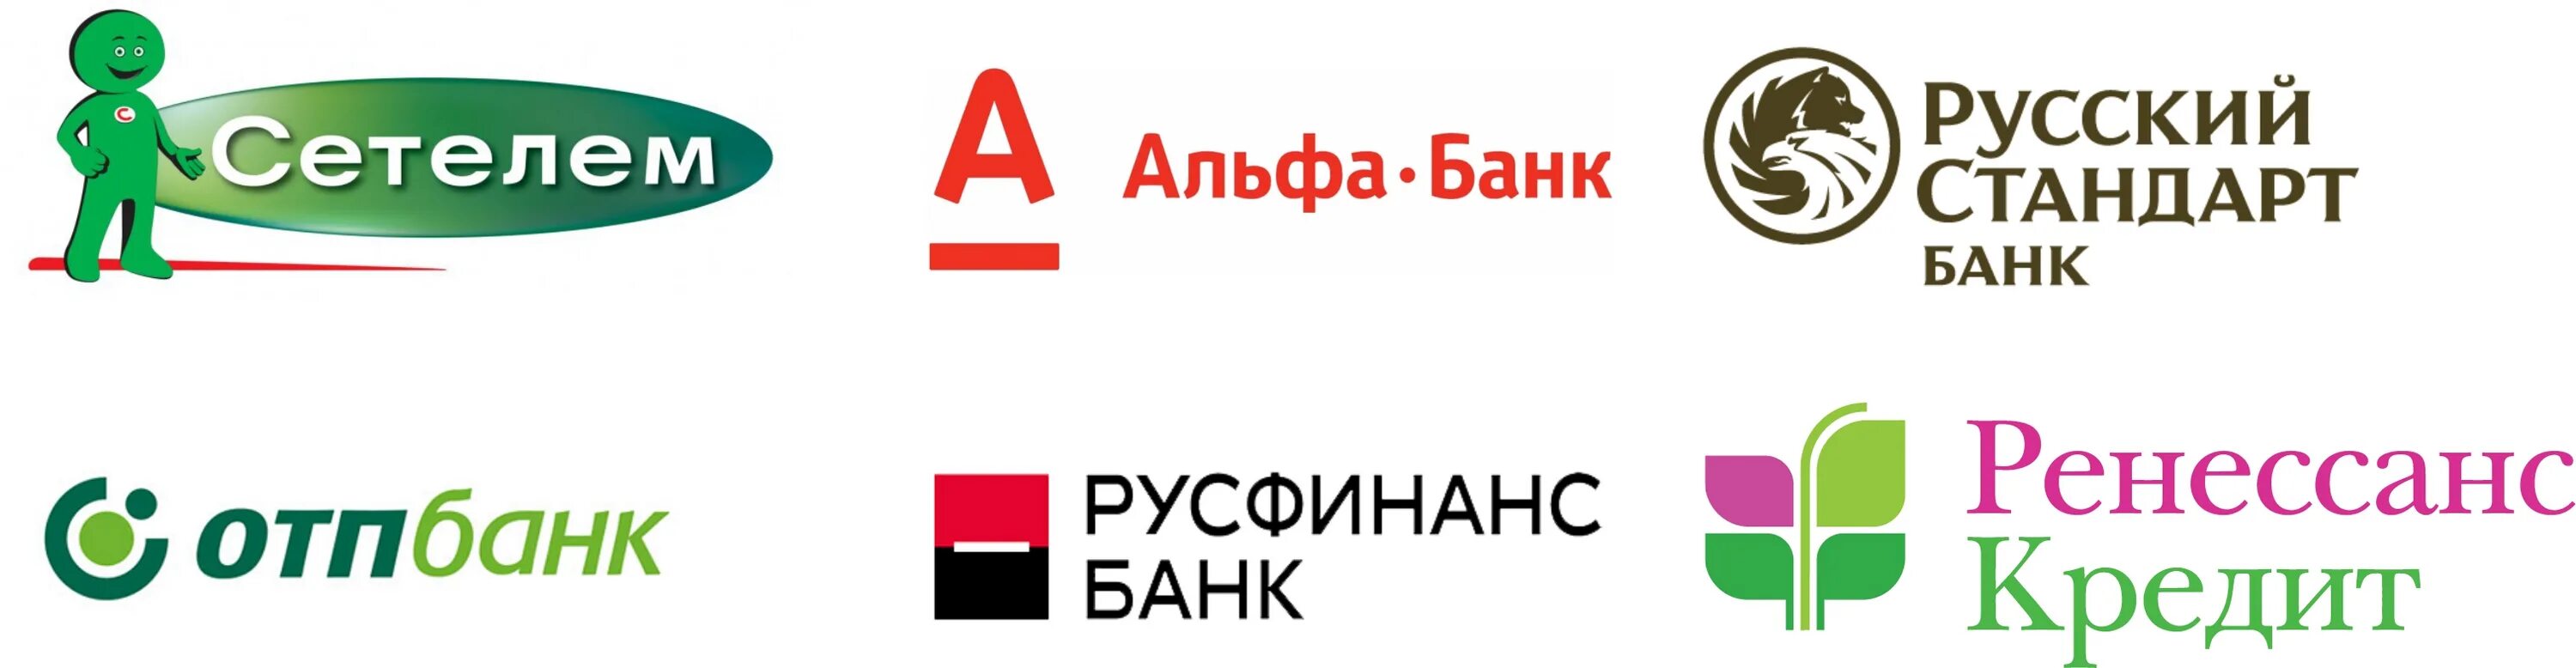 Банк России логотип. Ренессанс банк. Значок Ренессанс банк. Ренессанс кредит логотип.